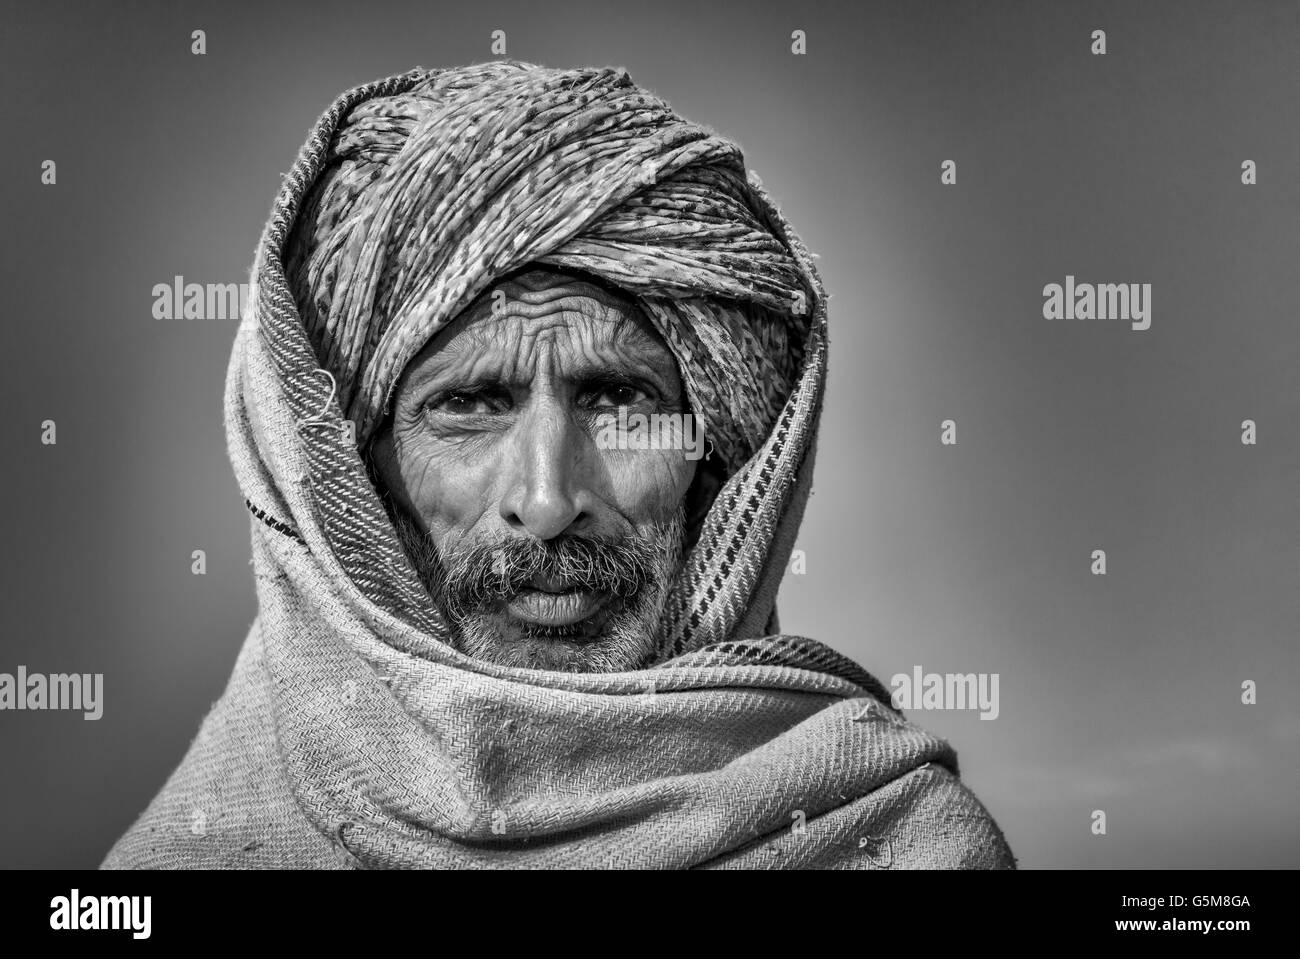 Ritratto di un senior del Rajasthan con un turbante, Pushkar, Rajasthan, India Foto Stock